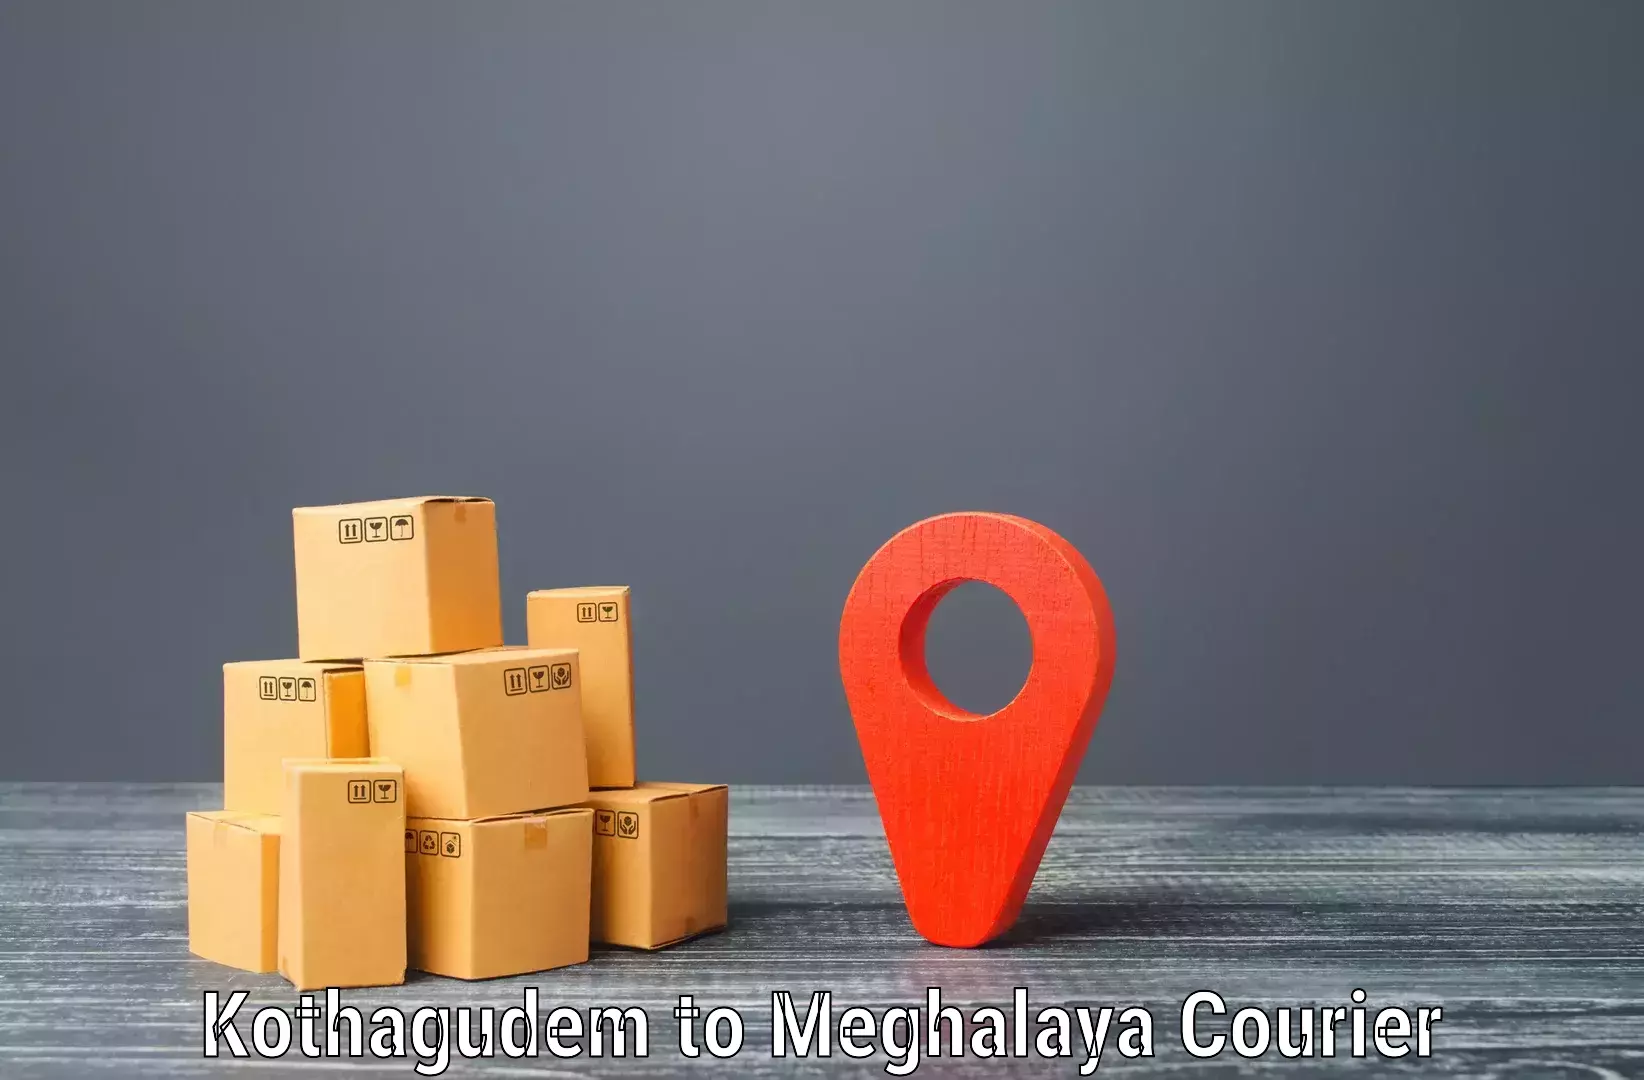 Professional parcel services Kothagudem to Nongpoh